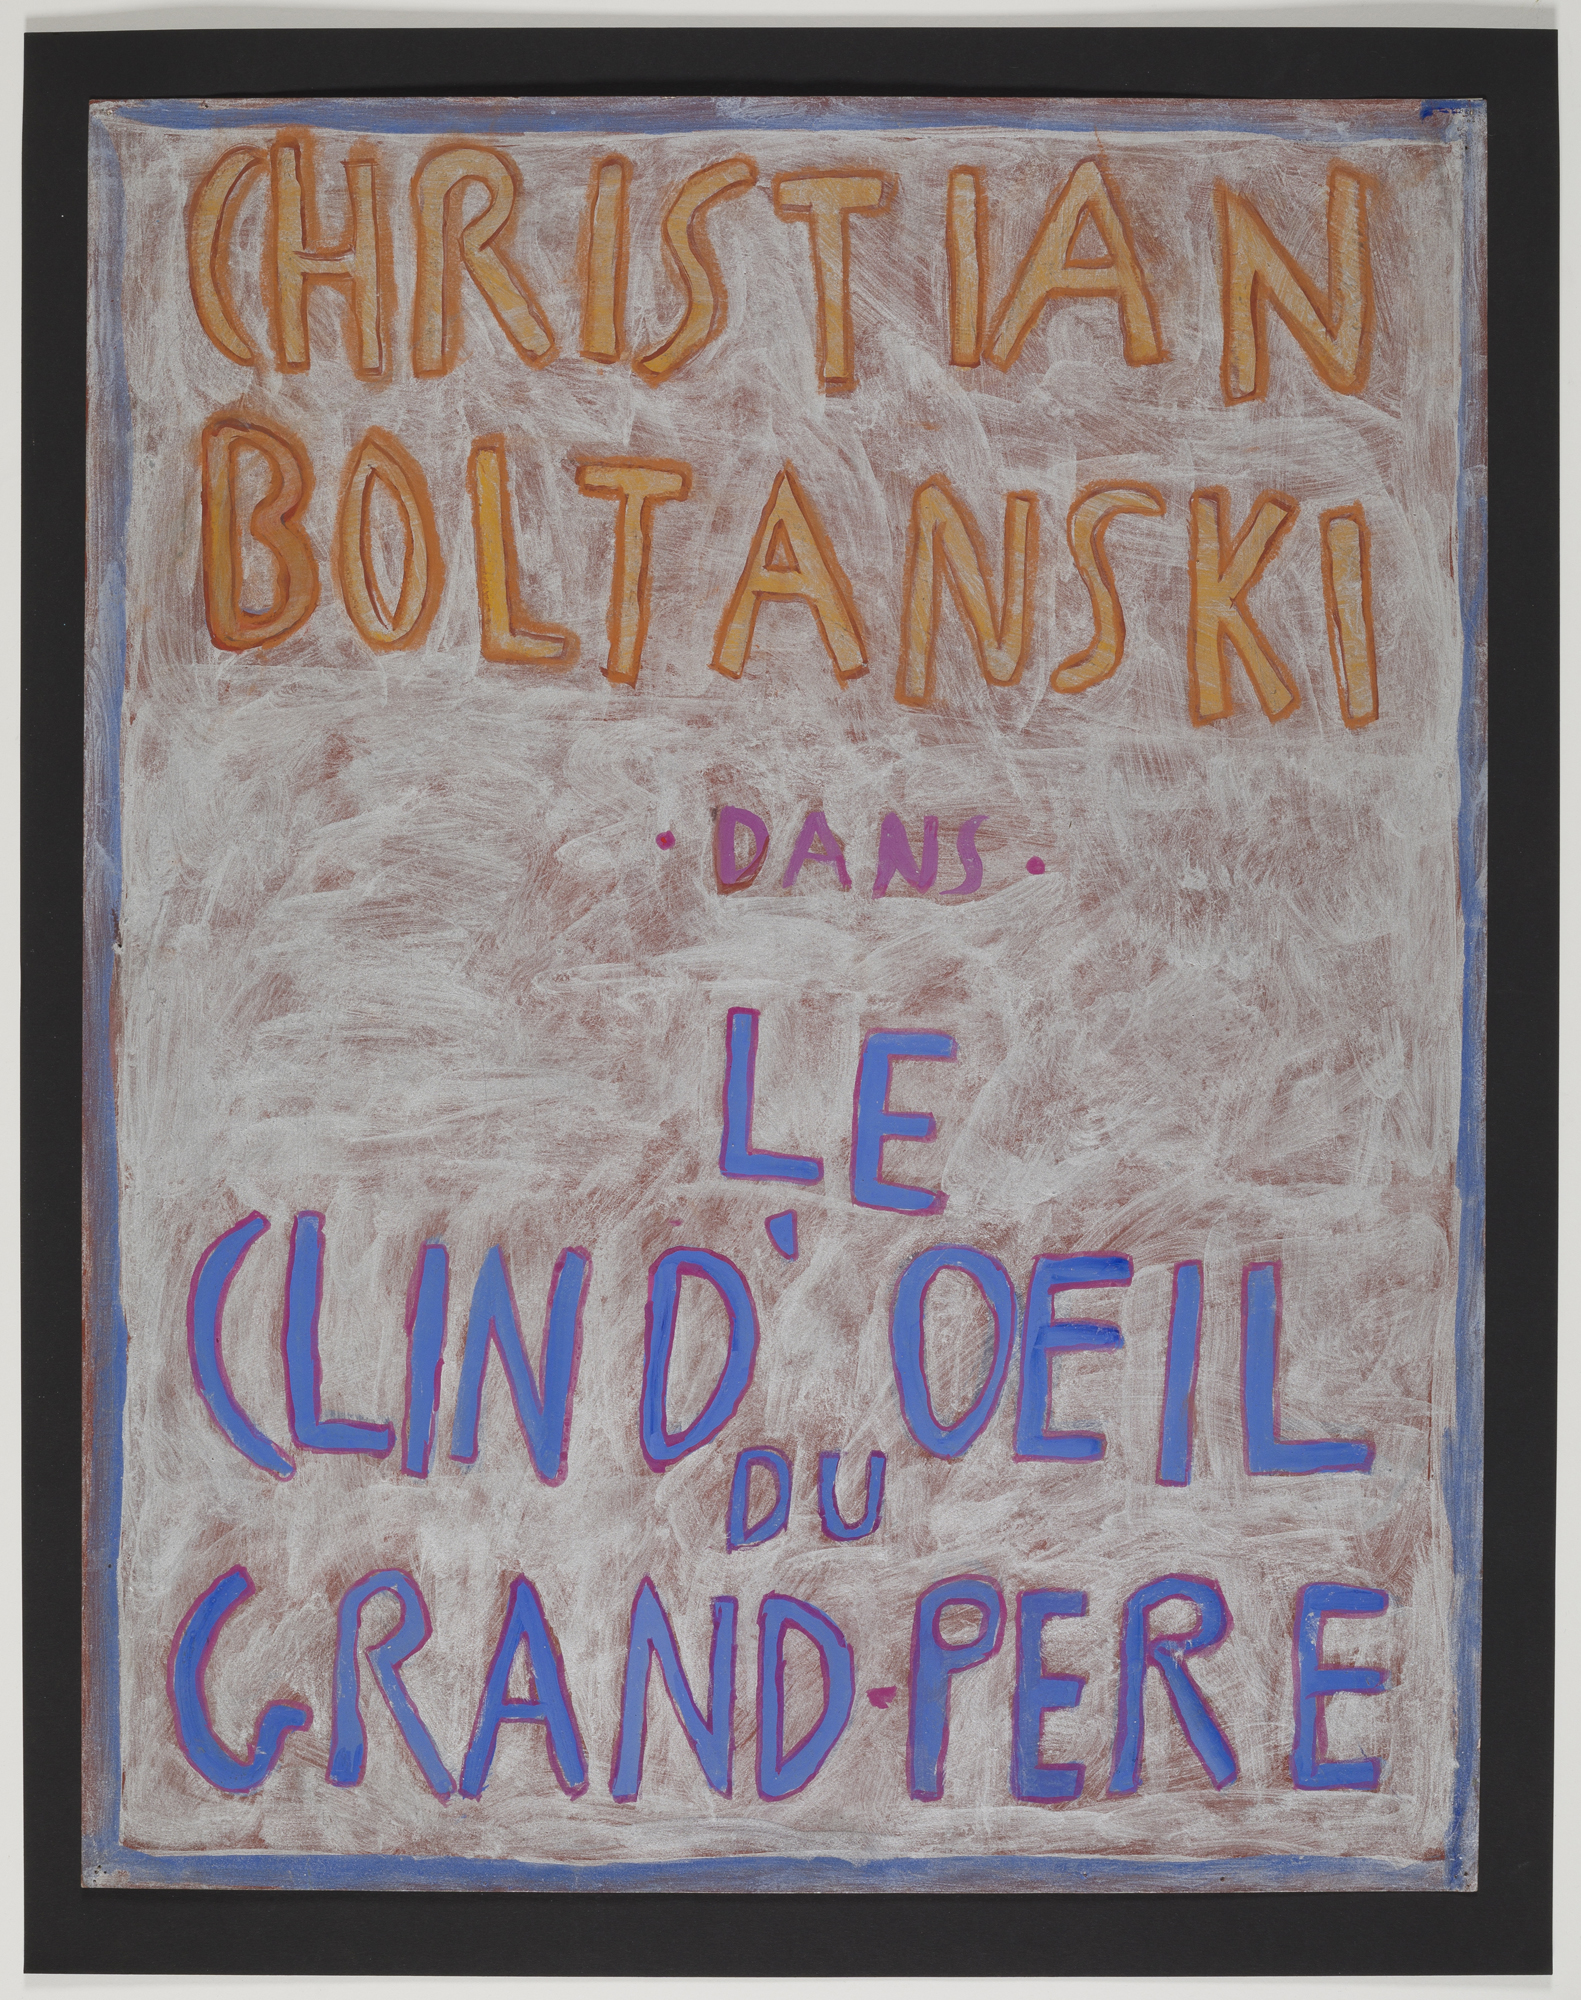 Christian Boltanski, CHRISTIAN BOLTANSKI DANS LE CLIN D'OEIL DU GRAND-PÈRE, 1975/75